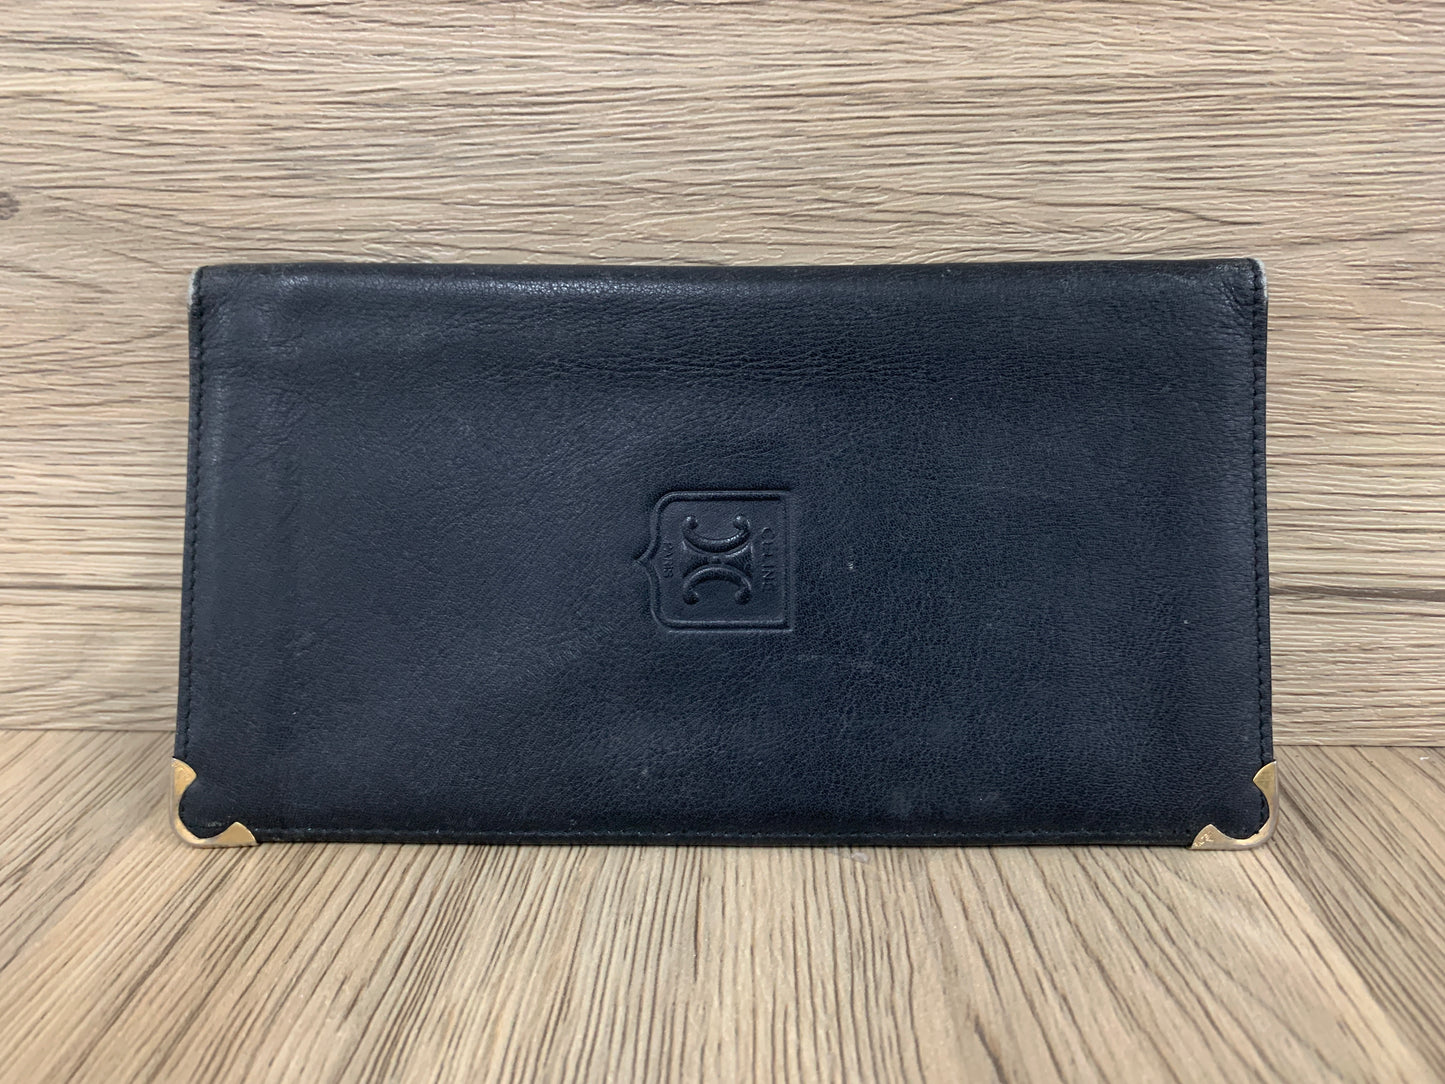 Authentic Celine wallet long black coins bag - 8APR